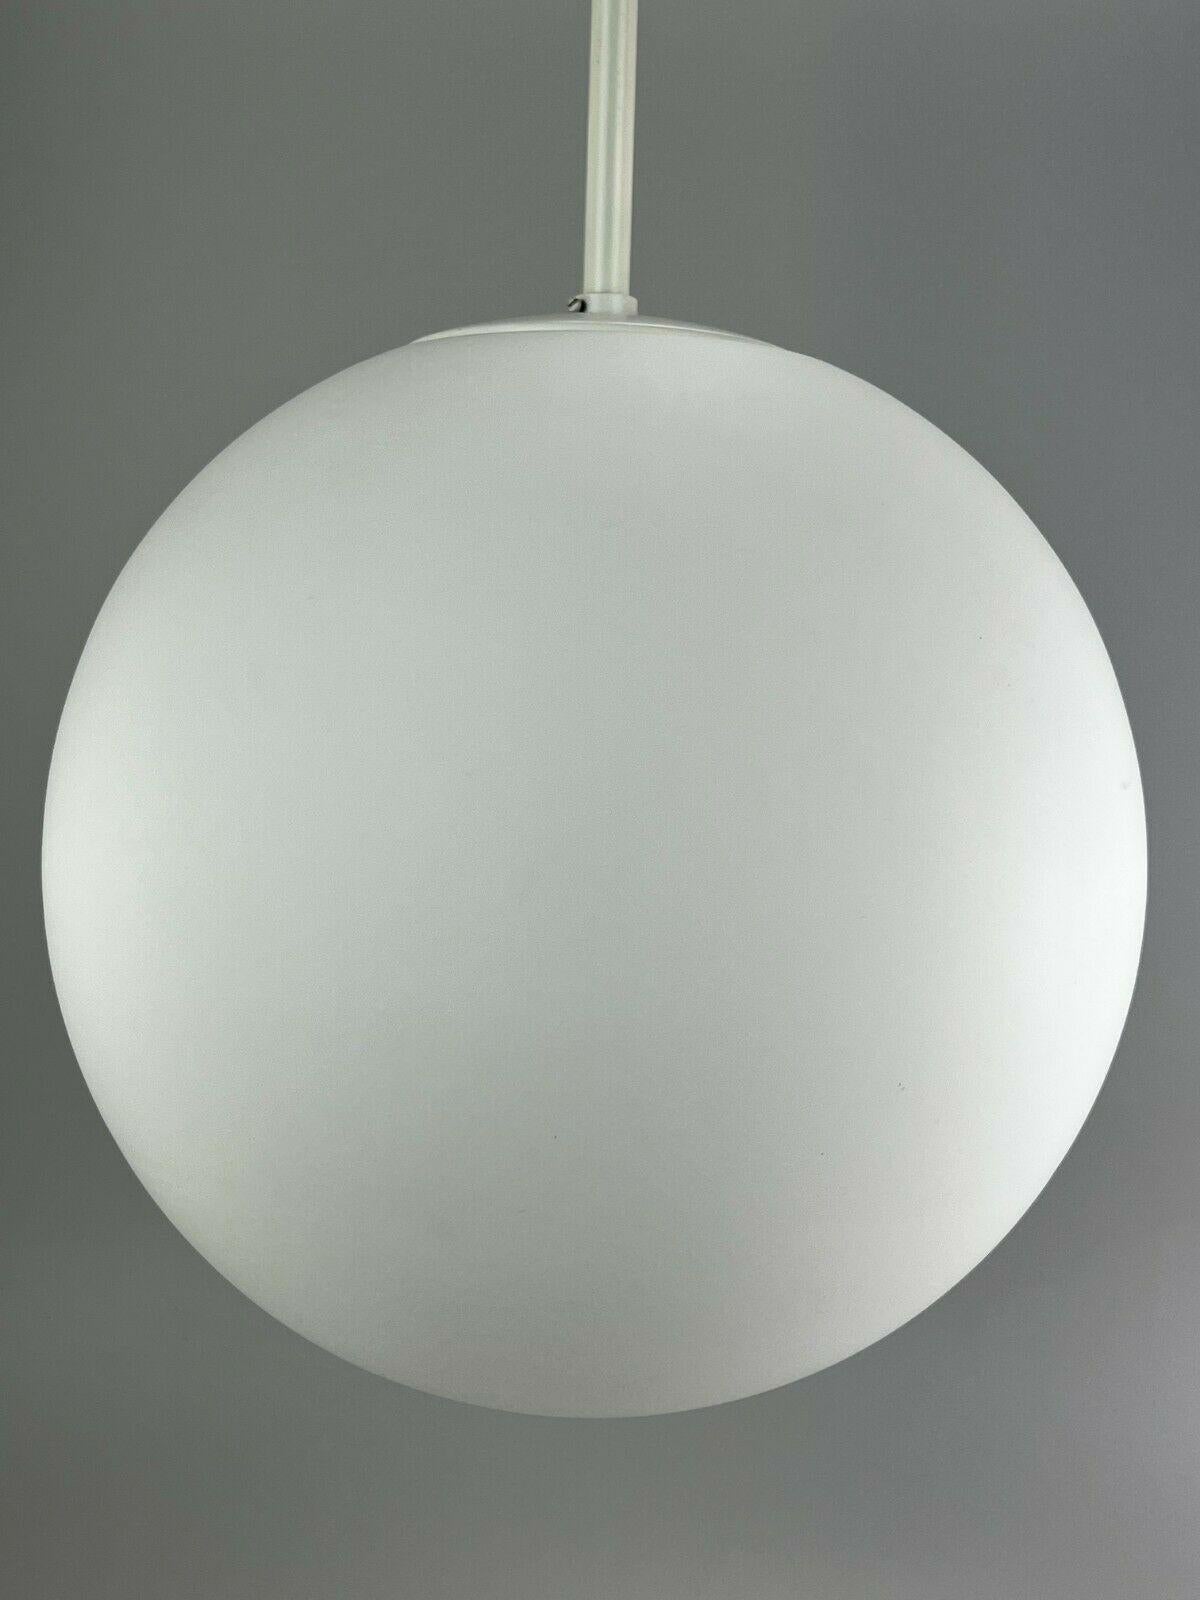 Xxl 60s 70s Lamp Light Ceiling Lamp Limburg Spherical Lamp Ball Design  For Sale 2